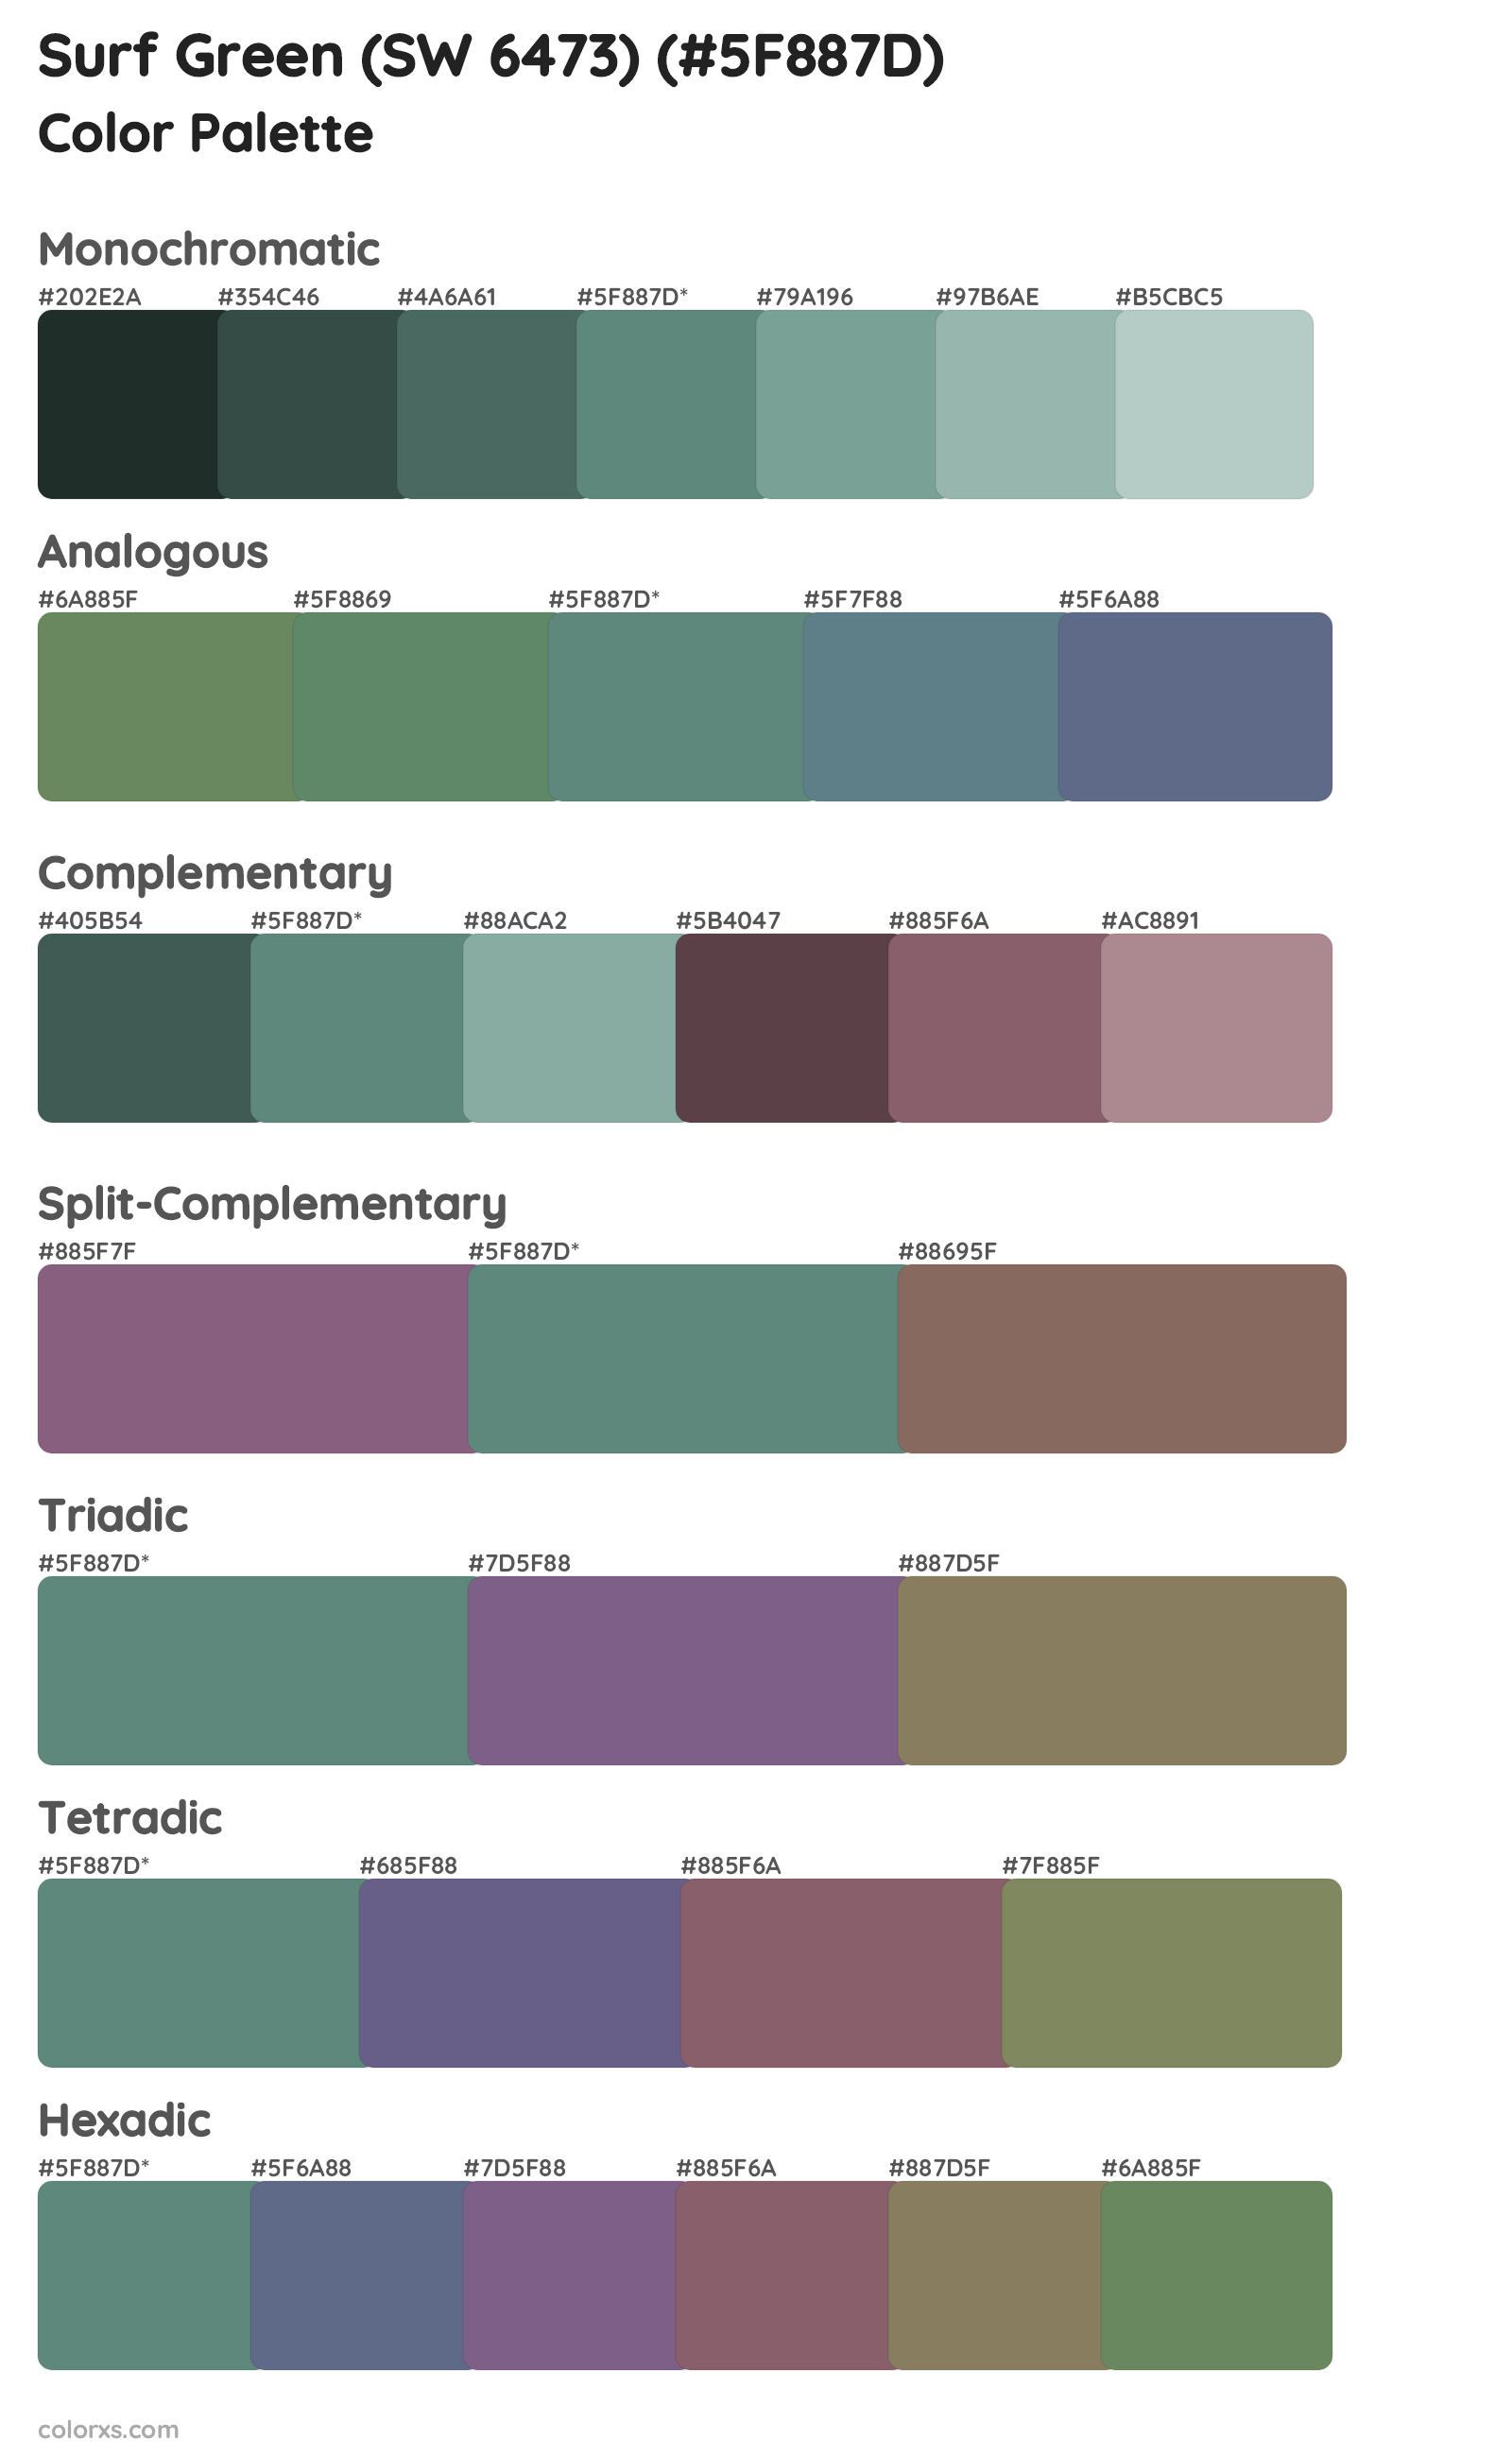 Surf Green (SW 6473) Color Scheme Palettes